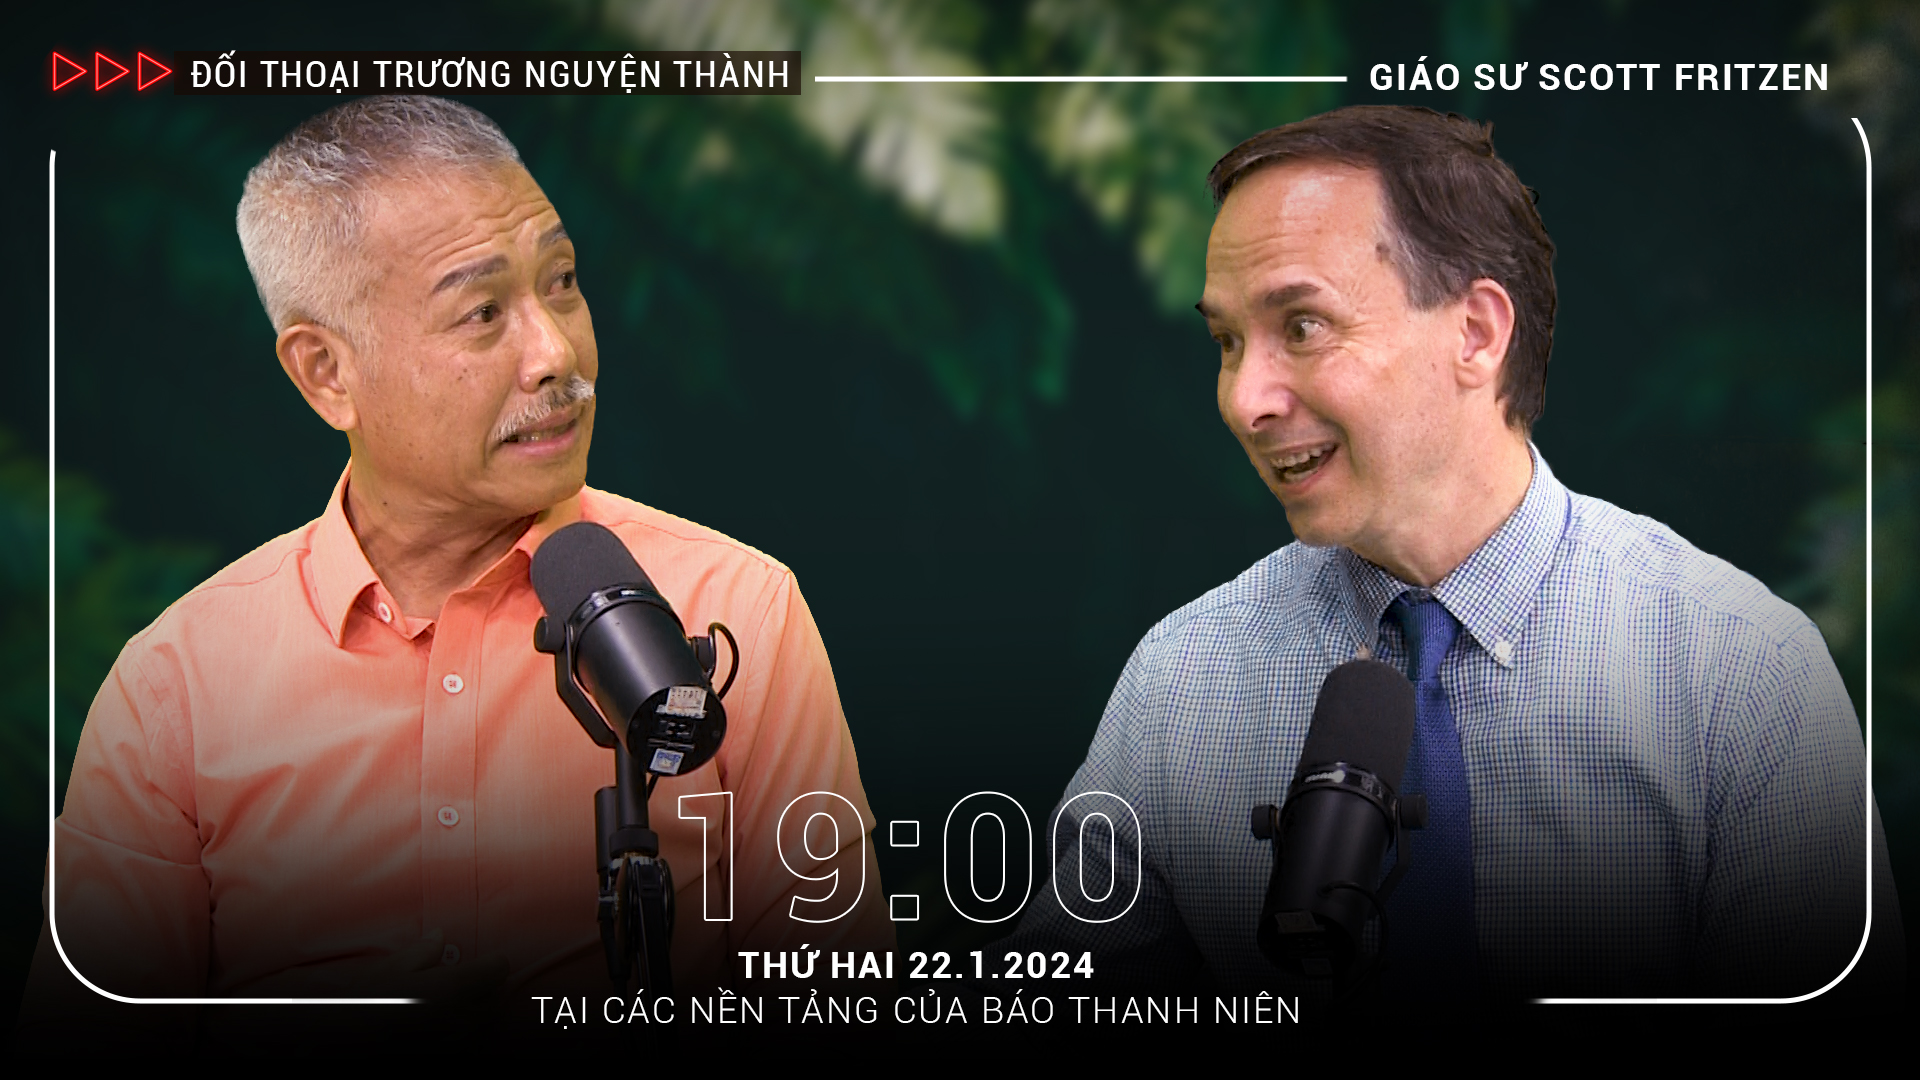 Buổi tranh luận bất ngờ bằng tiếng Việt giữa Chủ tịch người Mỹ của Trường ĐH Fulbright VN và GS Trương Nguyện Thành- Ảnh 1.